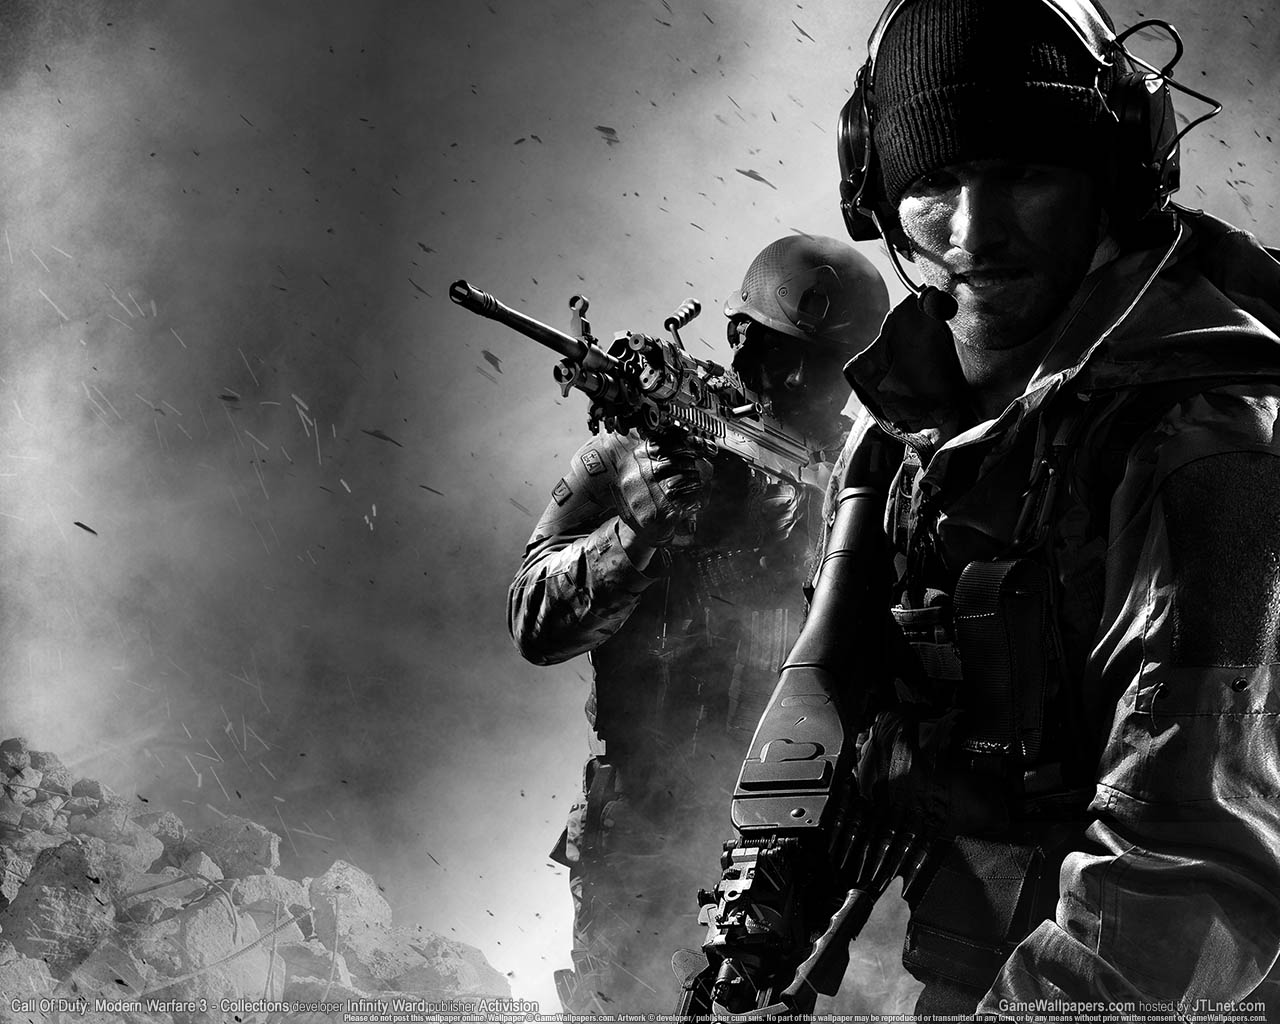 Call Of Duty: Modern Warfare 3 - Collections fond d'cran 01 1280x1024